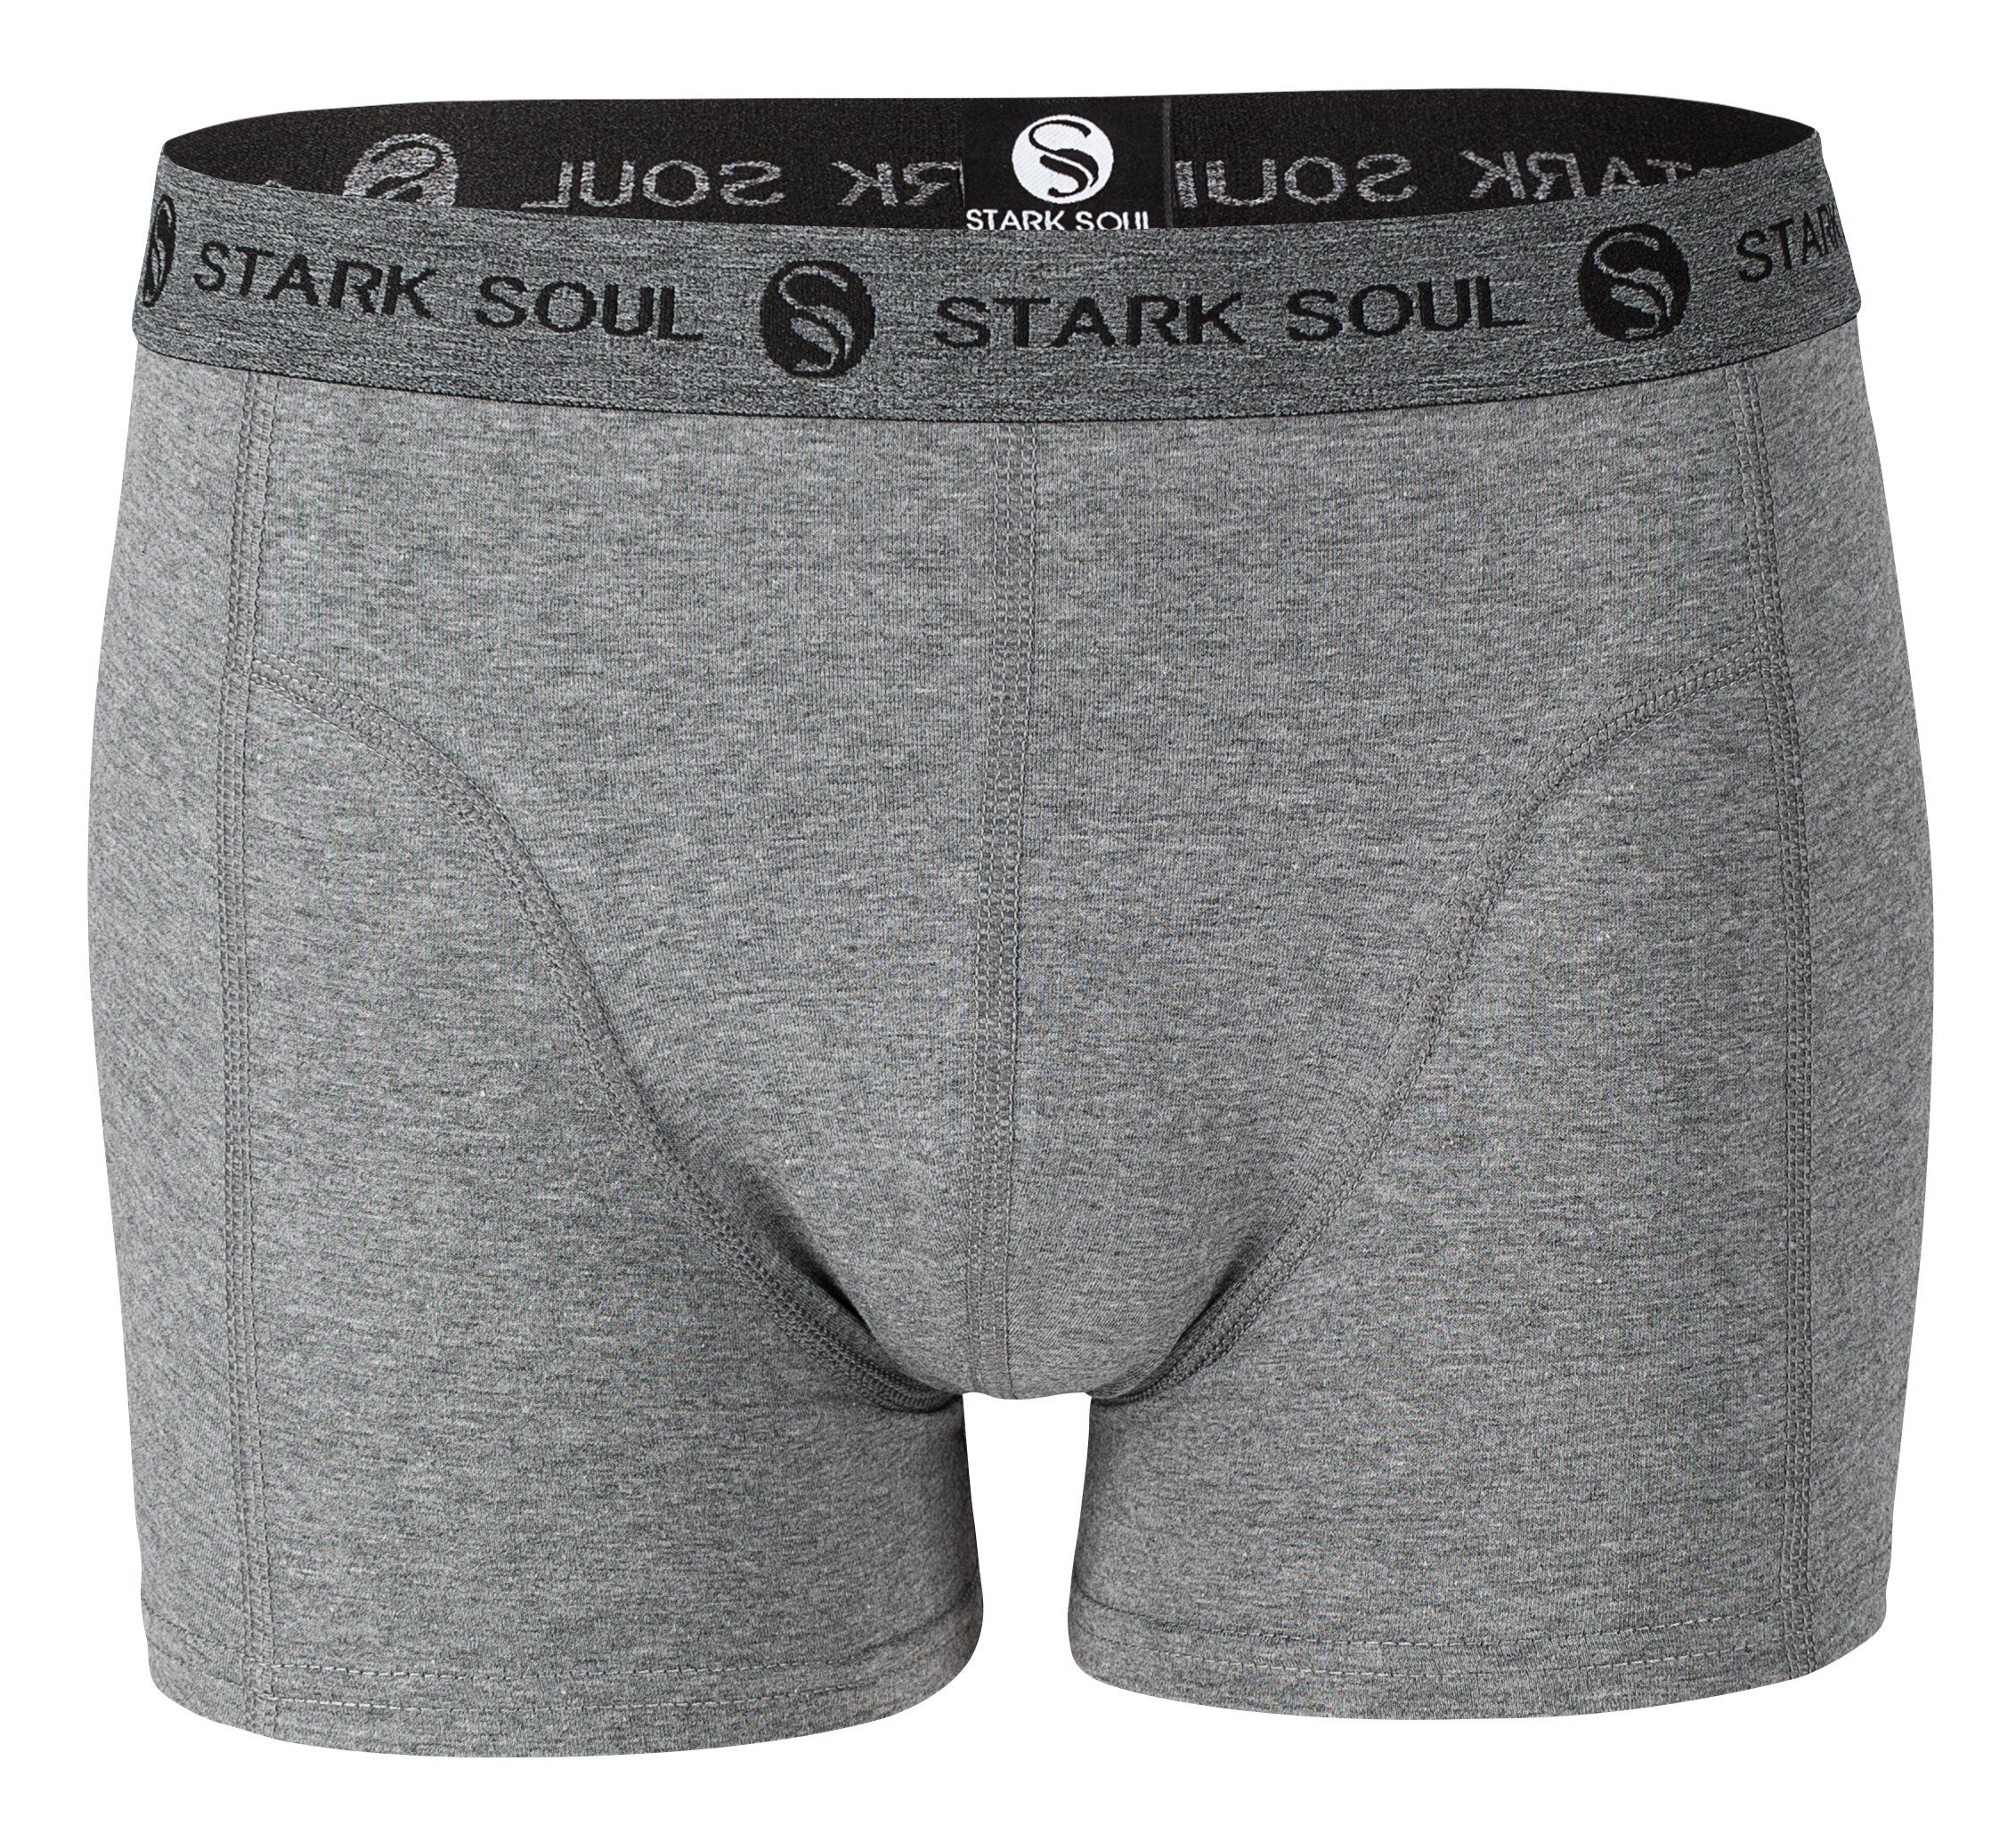 Stark Soul® Boxershorts weiche Trunks - Pack, Retroshorts, Gemischt Baumwolle Herren Boxershorts, 3er 3er-Pack